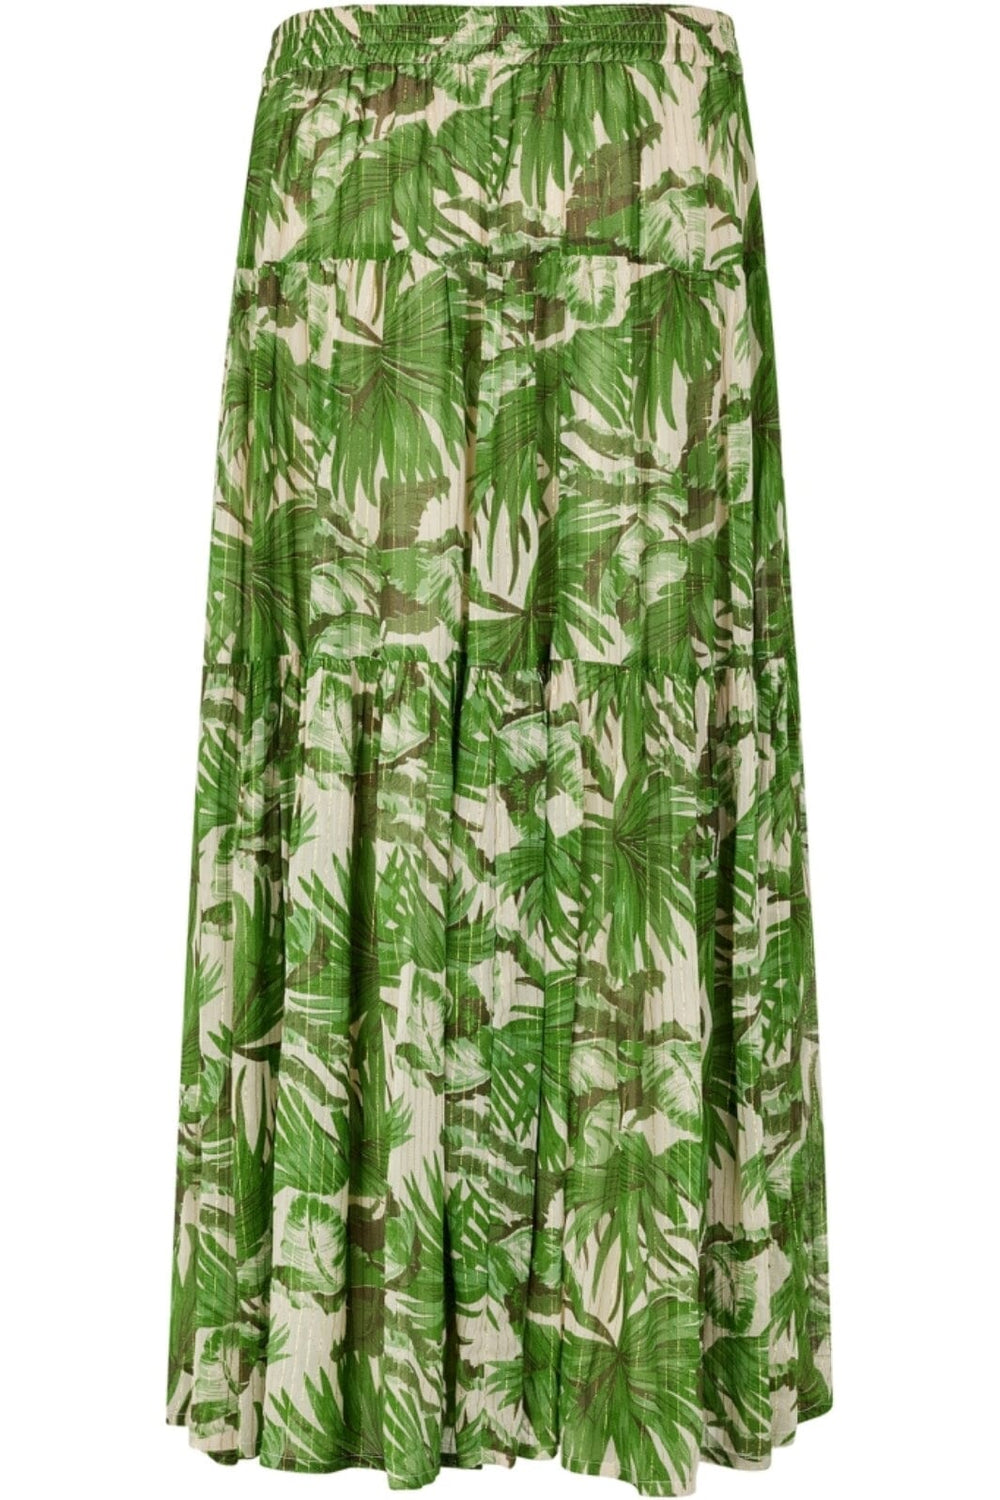 Lollys Laundry - SunsetLL Maxi Skirt - 40 Green Nederdele 